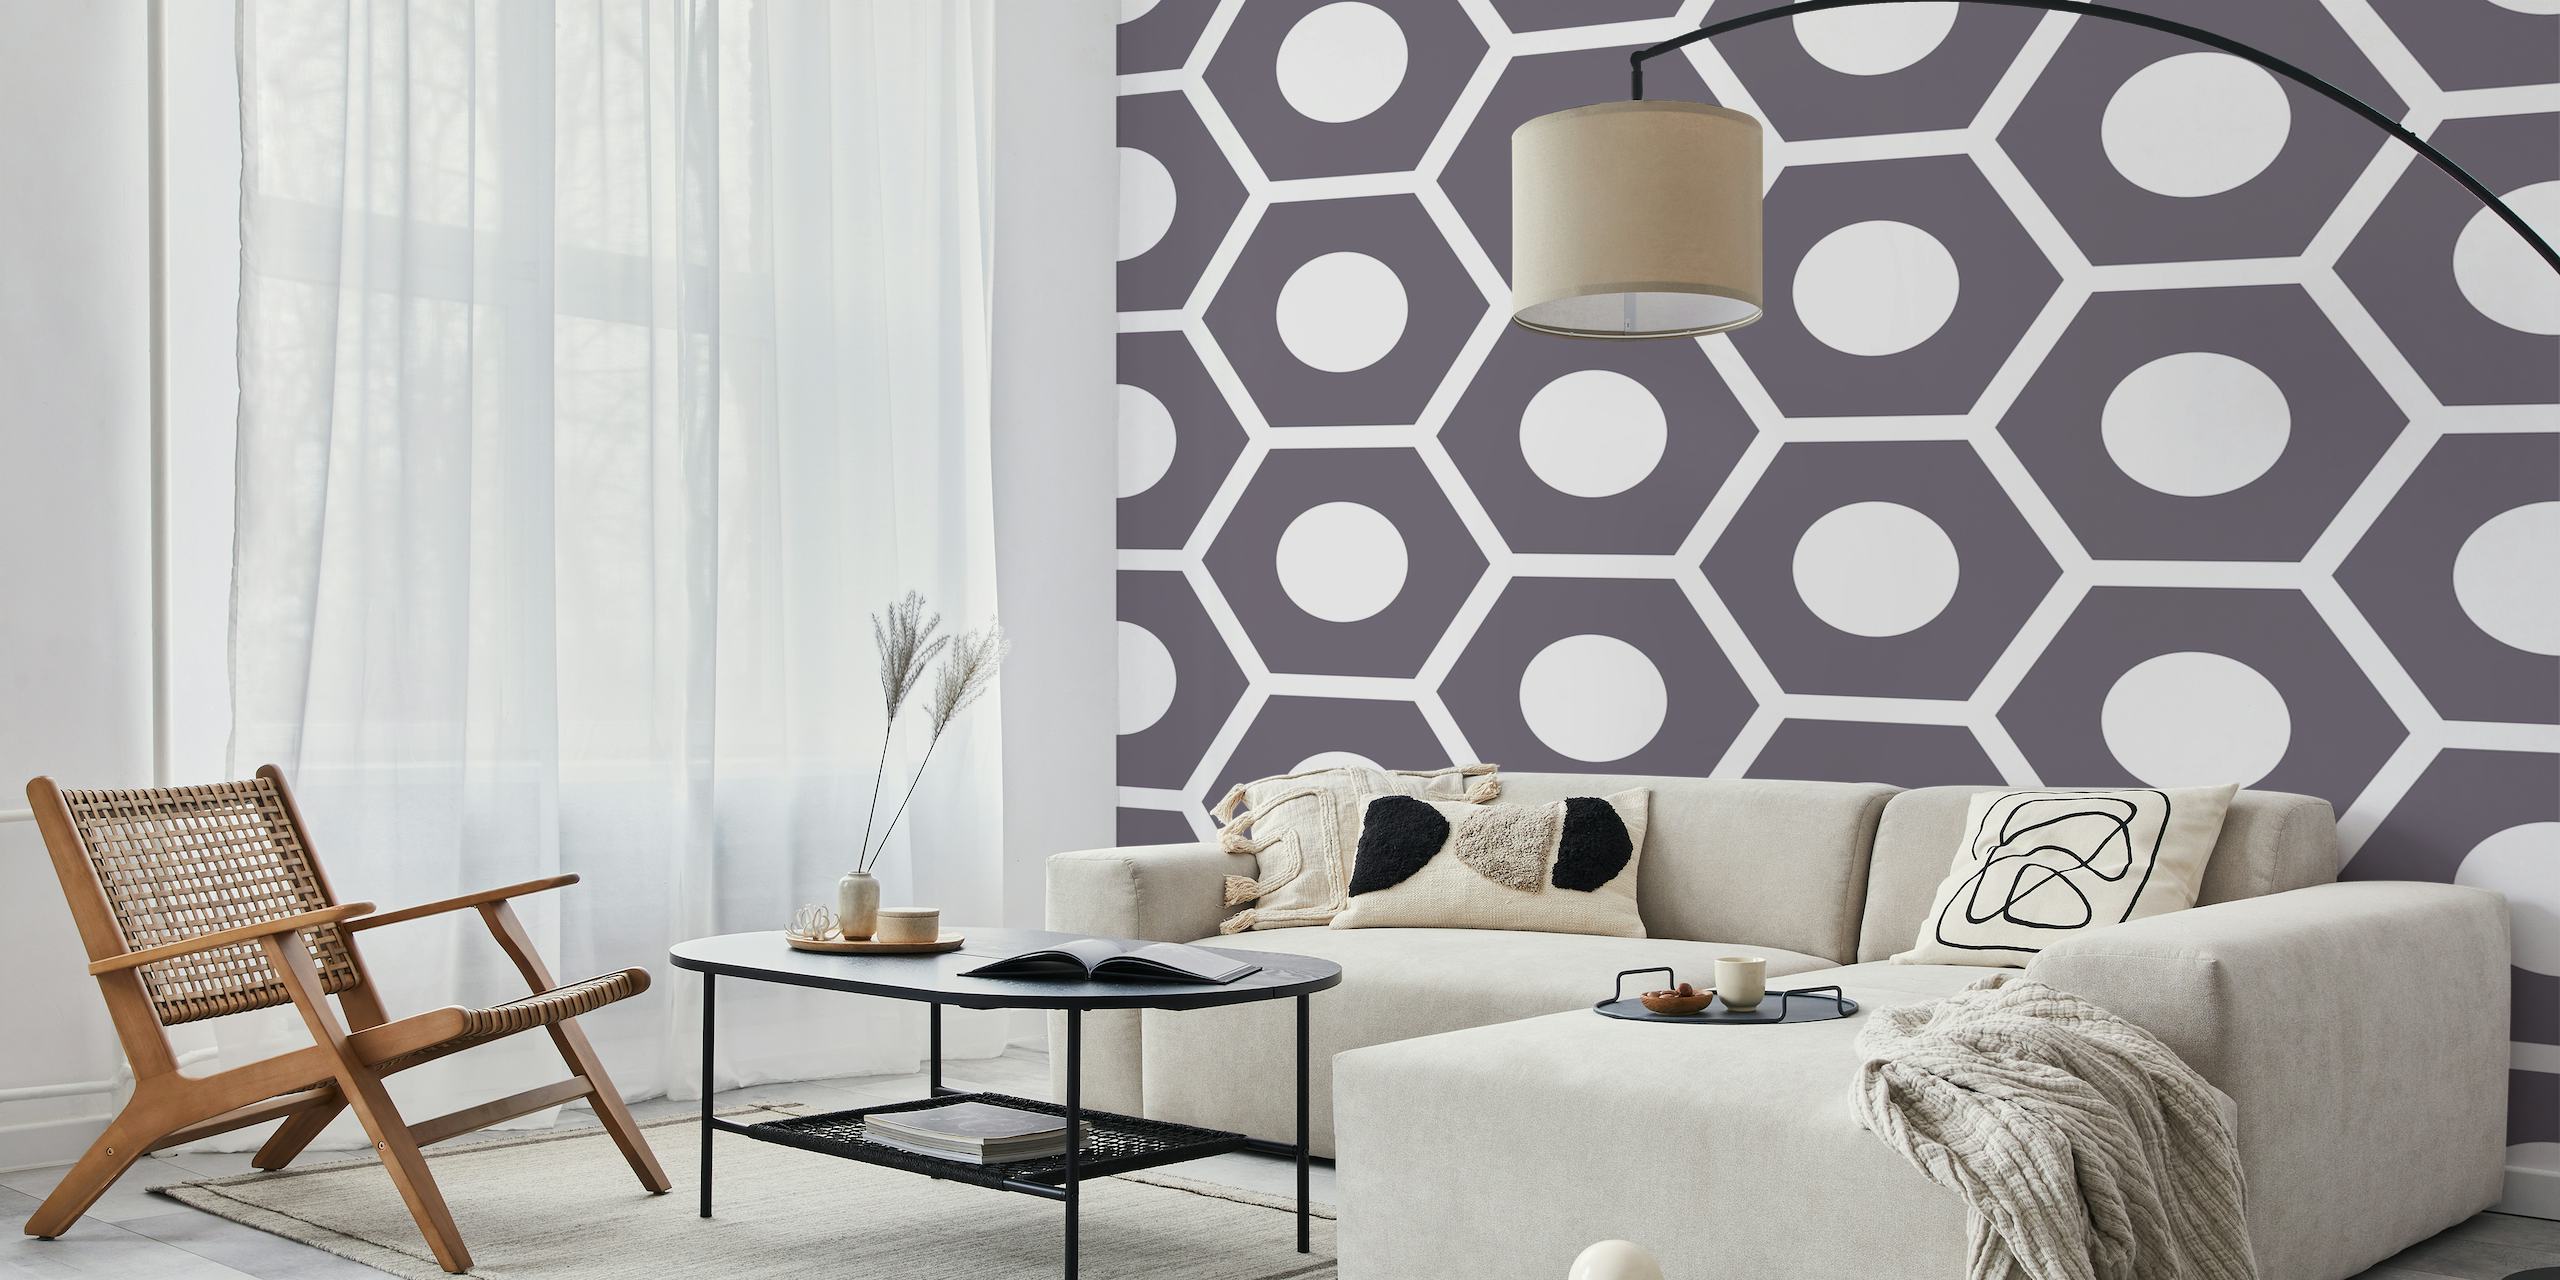 Fotomural de pared con patrón hexagonal bicolor con diseño geométrico en gris y blanco.